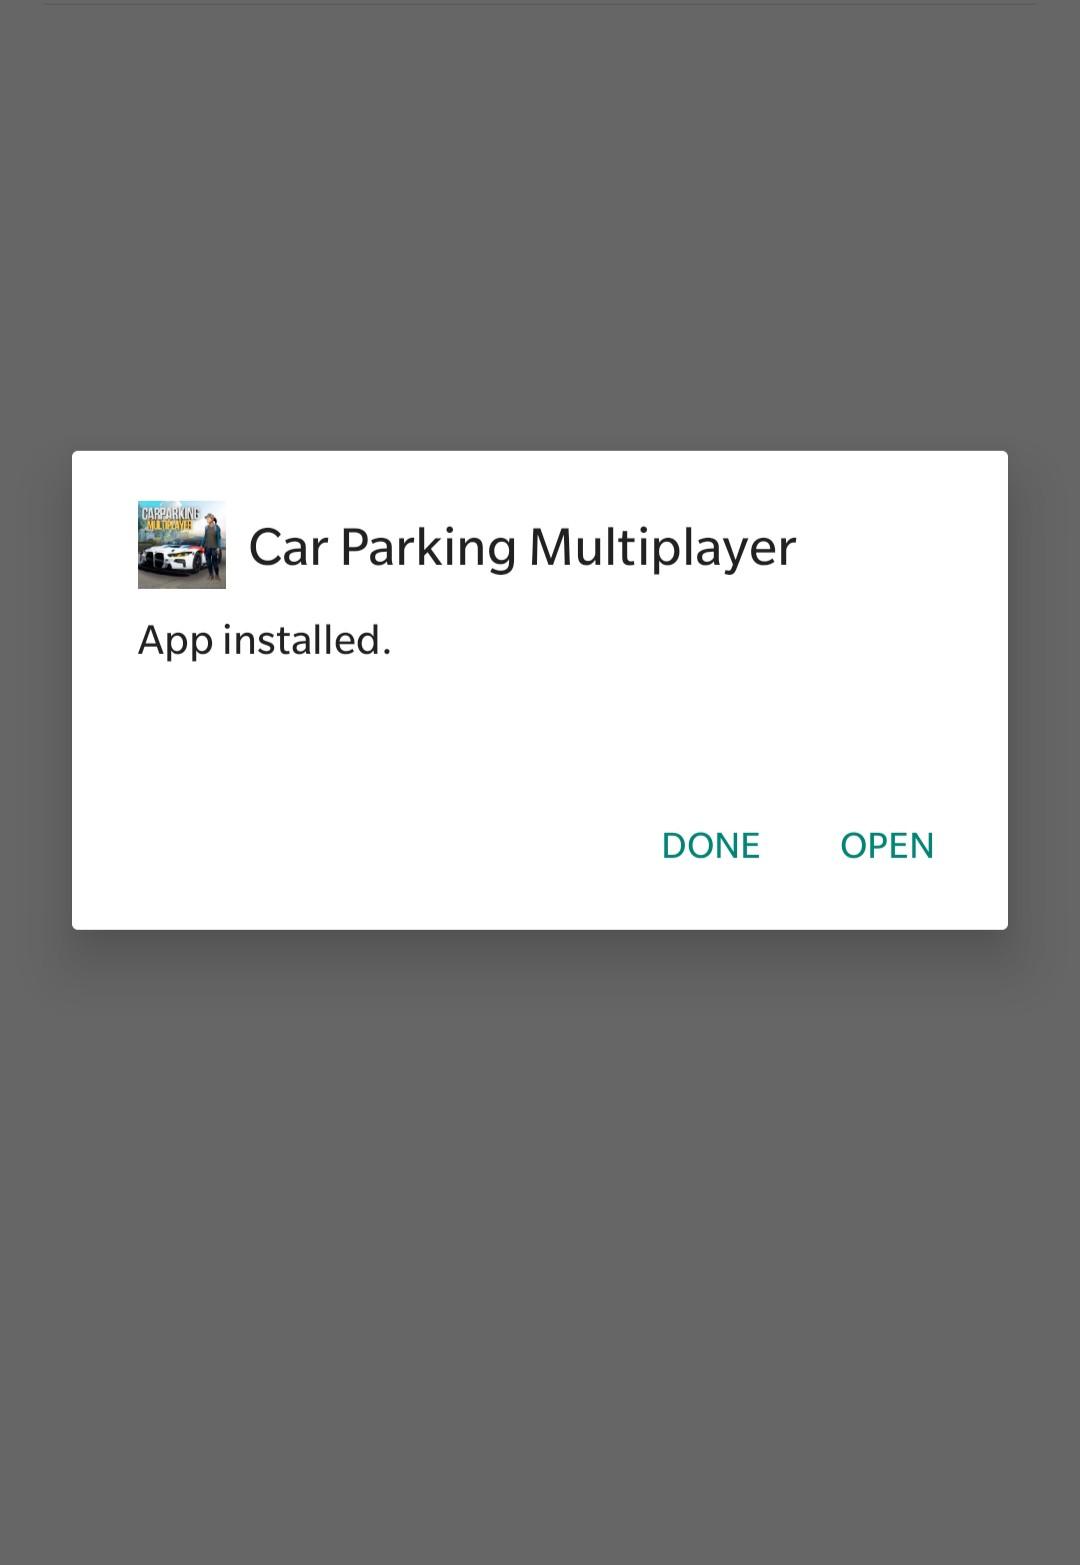 Car Parking Multiplayer mod apk installed